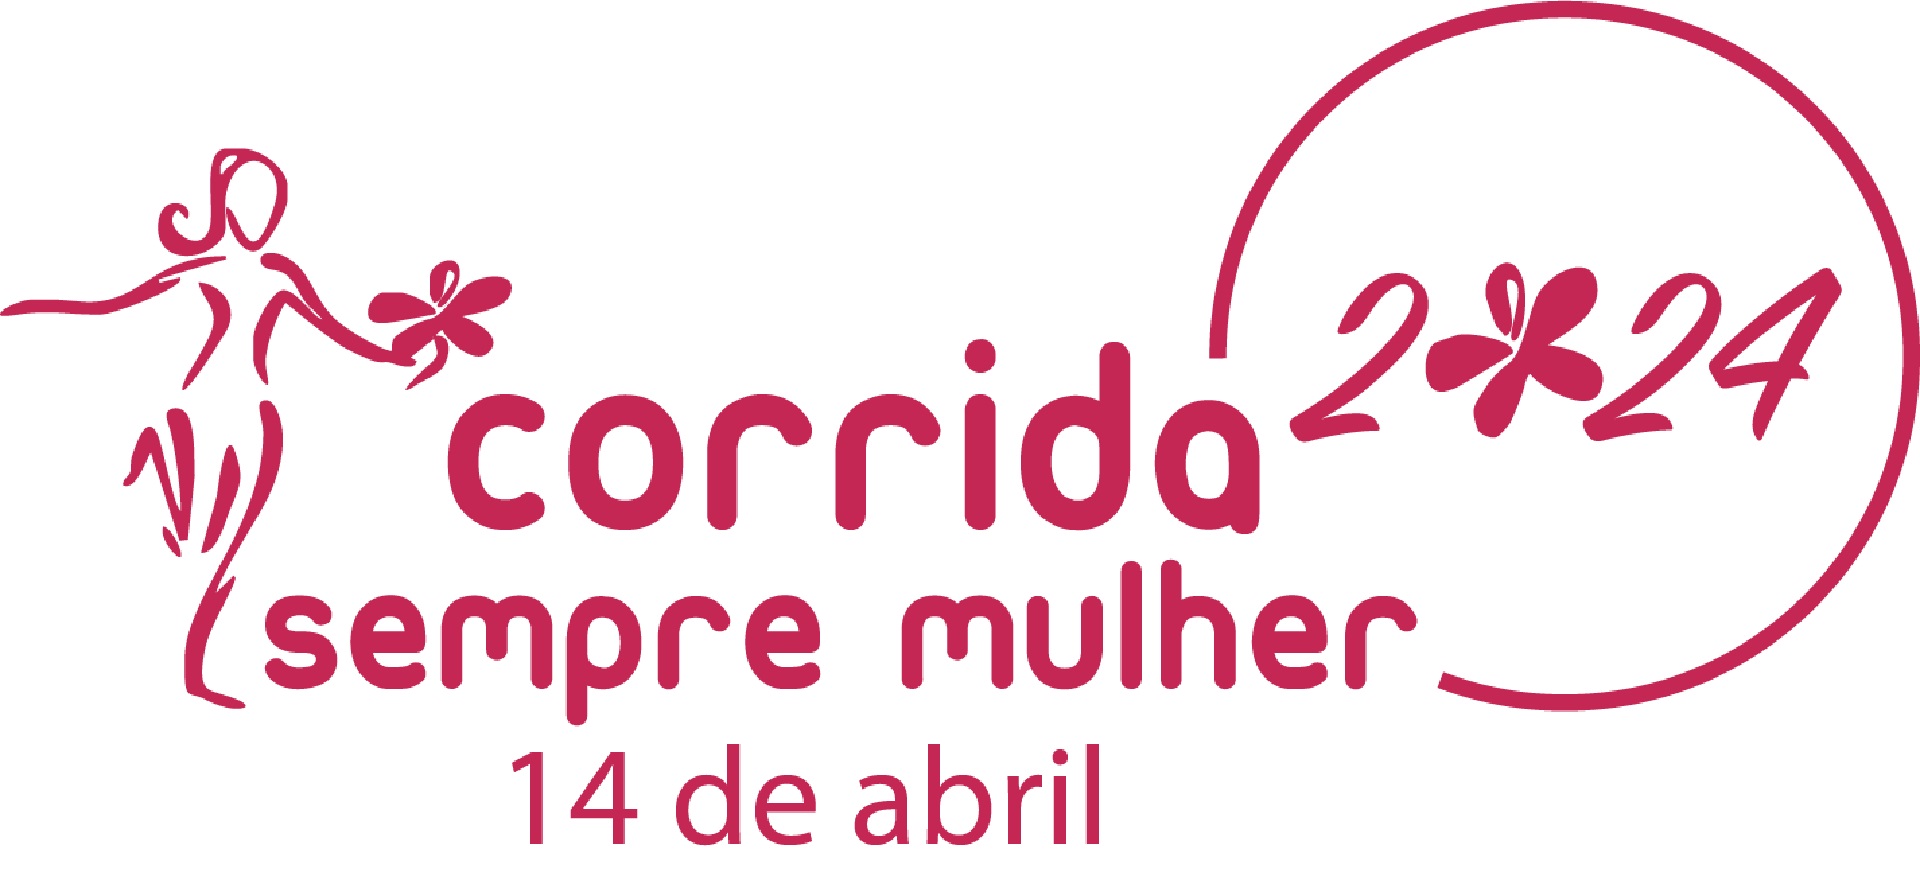 Corrida Sempre Mulher tem lugar no próximo dia 14 de abril em Lisboa